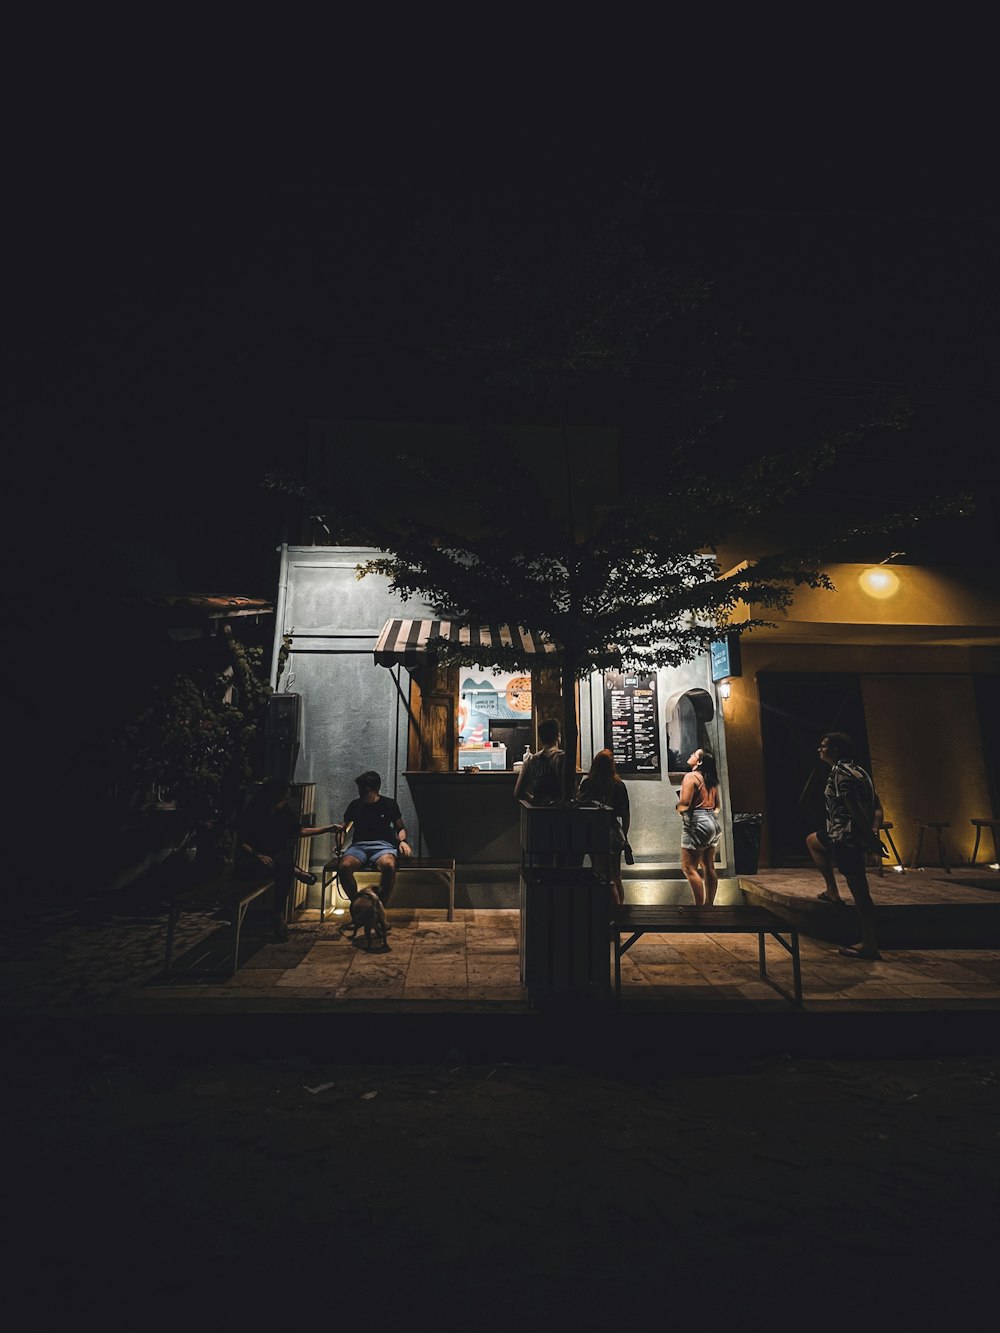 Un grupo de personas sentadas fuera de un edificio por la noche